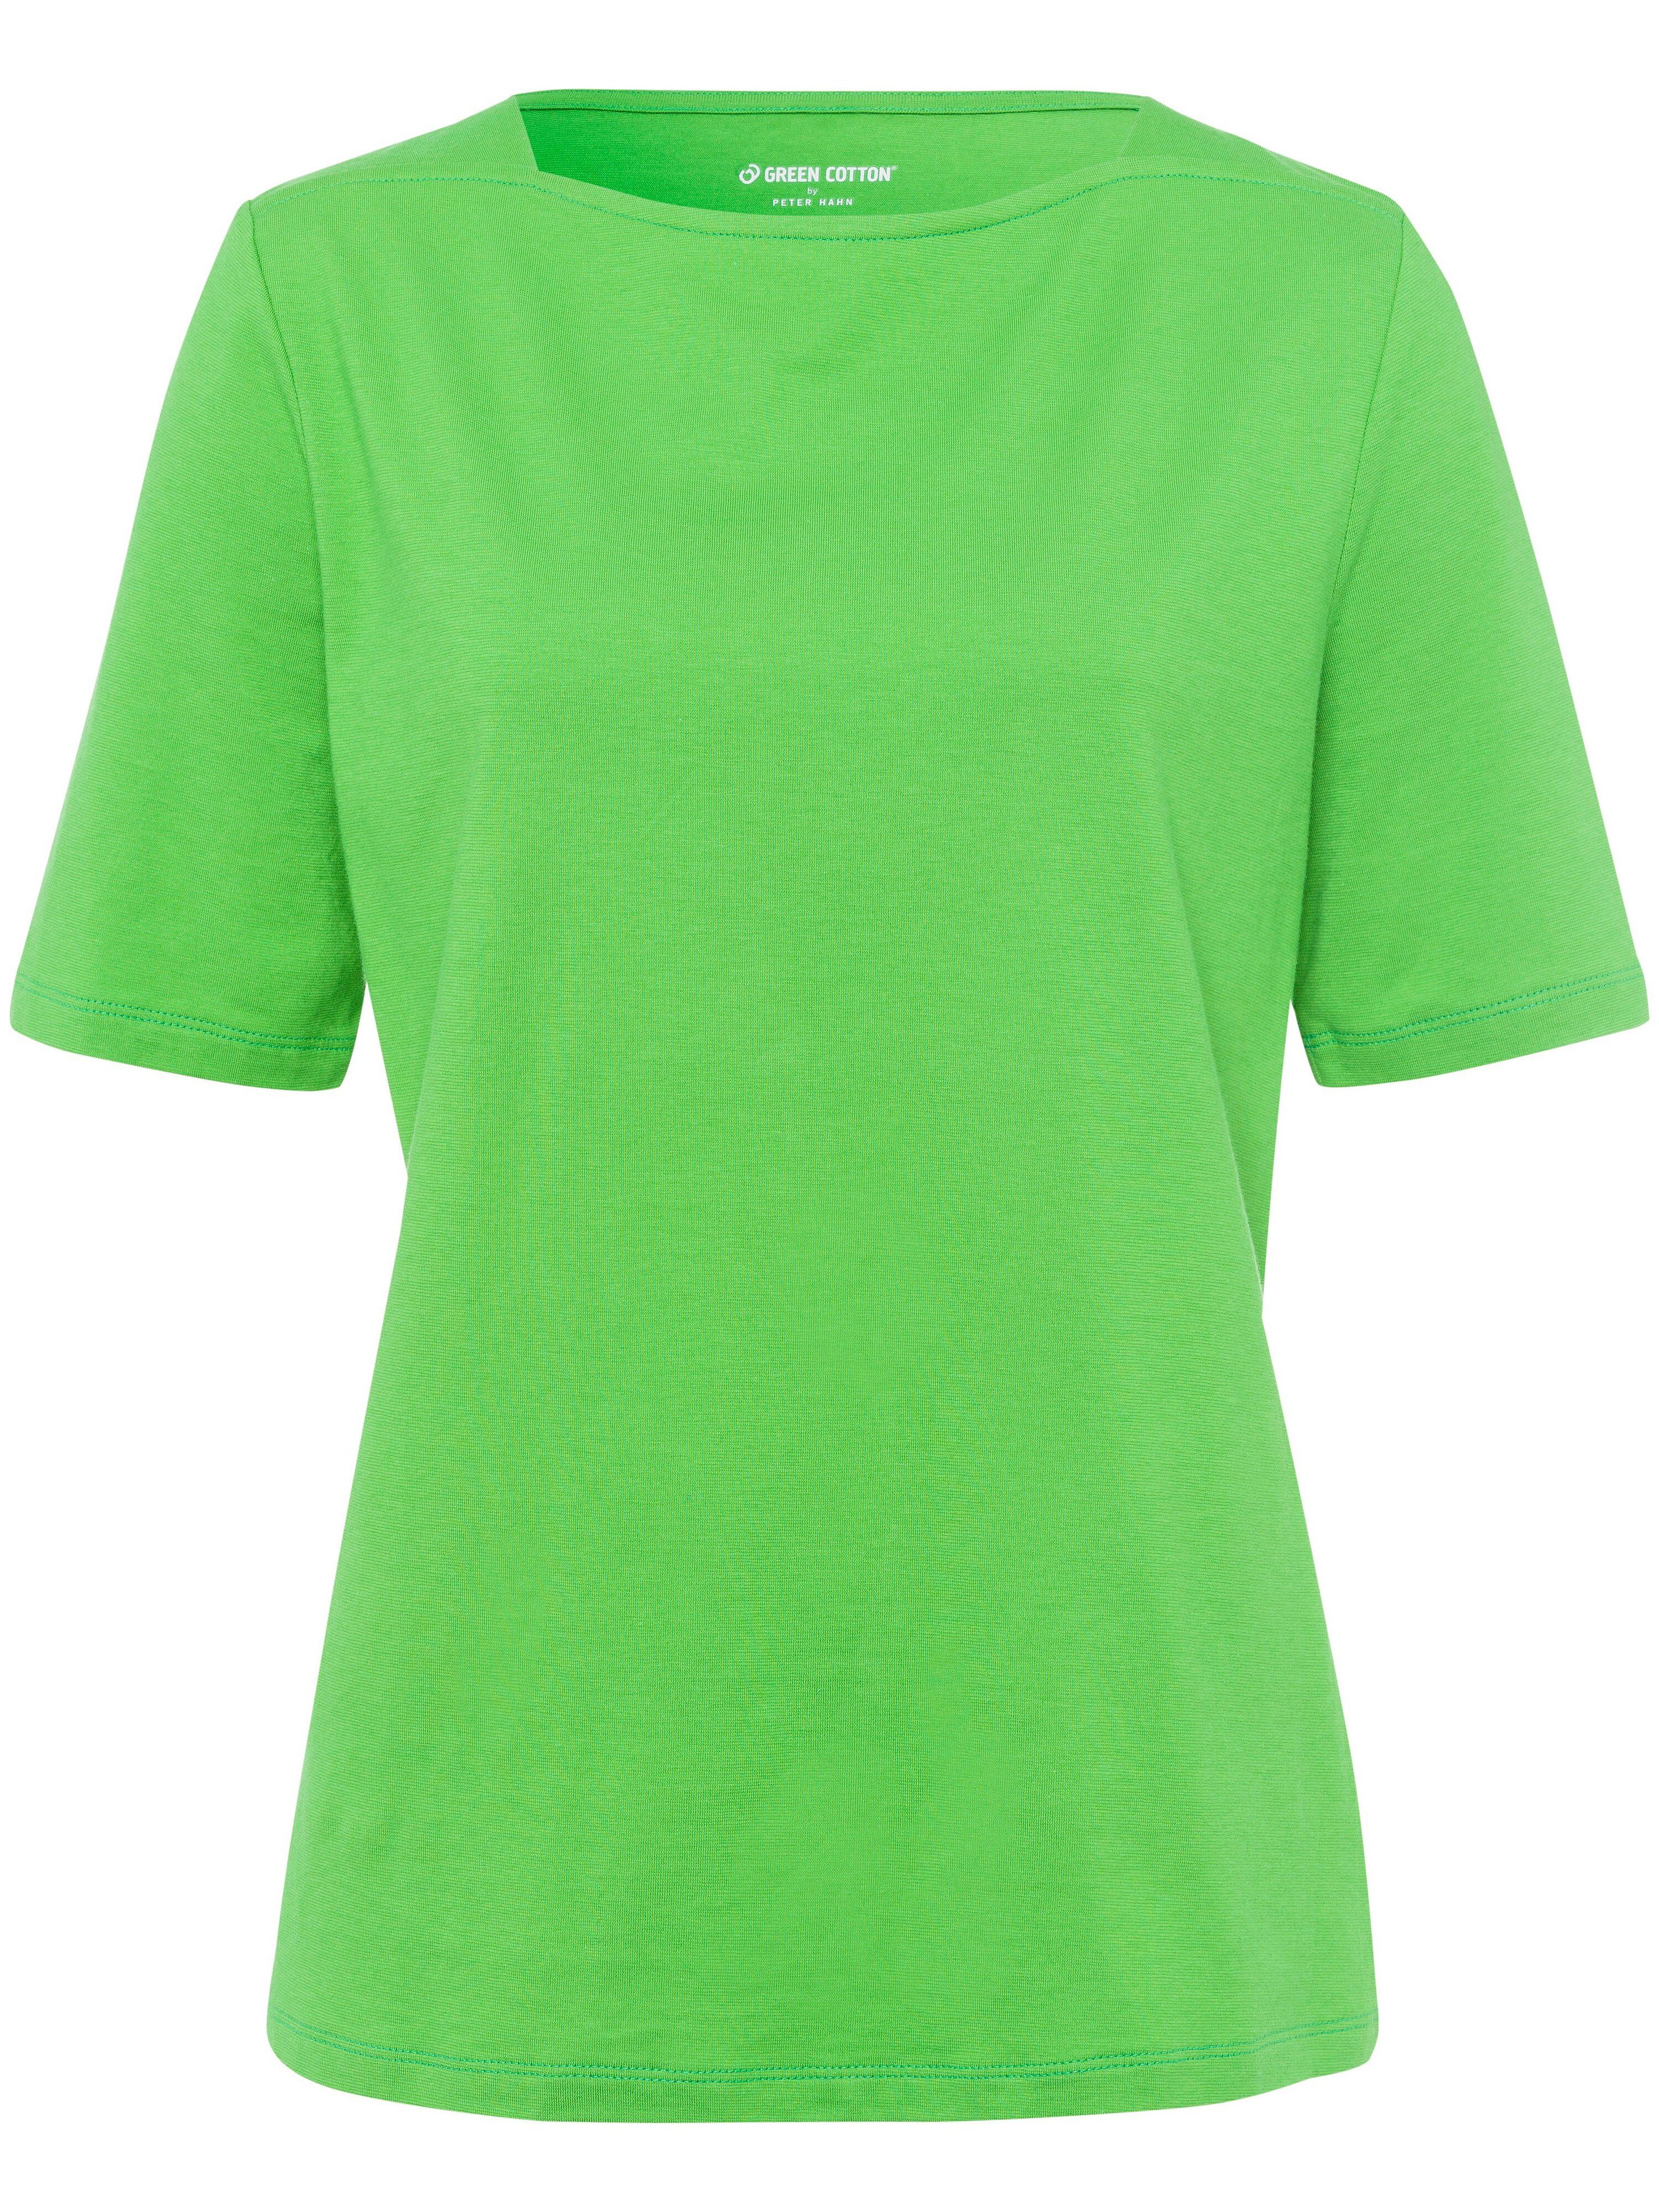 Green Cotton Shirt Green Cotton grün Damen 40